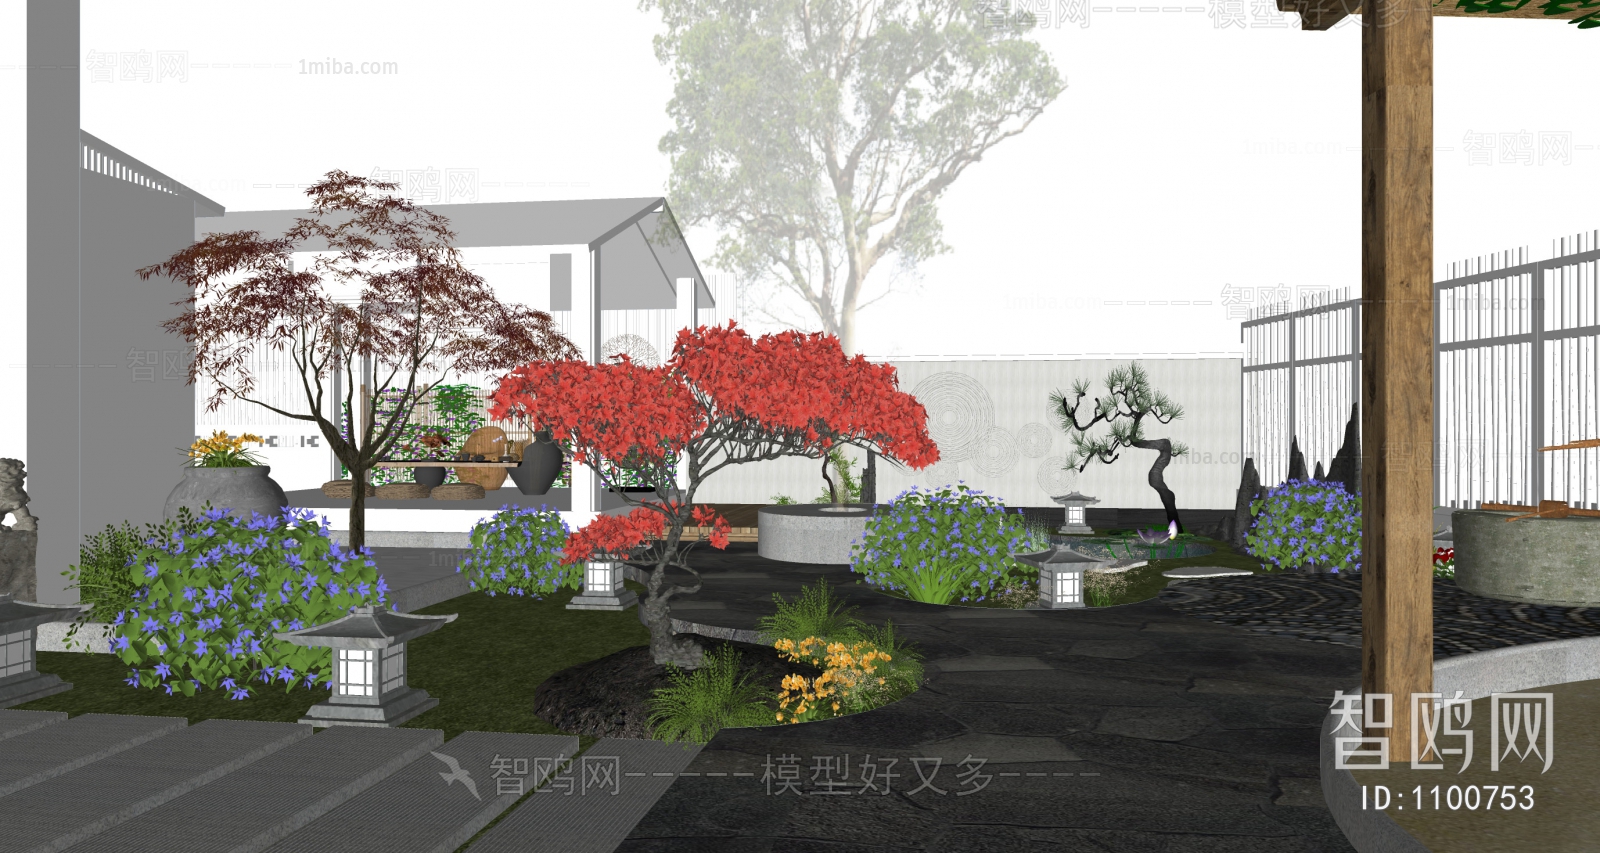 Japanese Style Courtyard/landscape